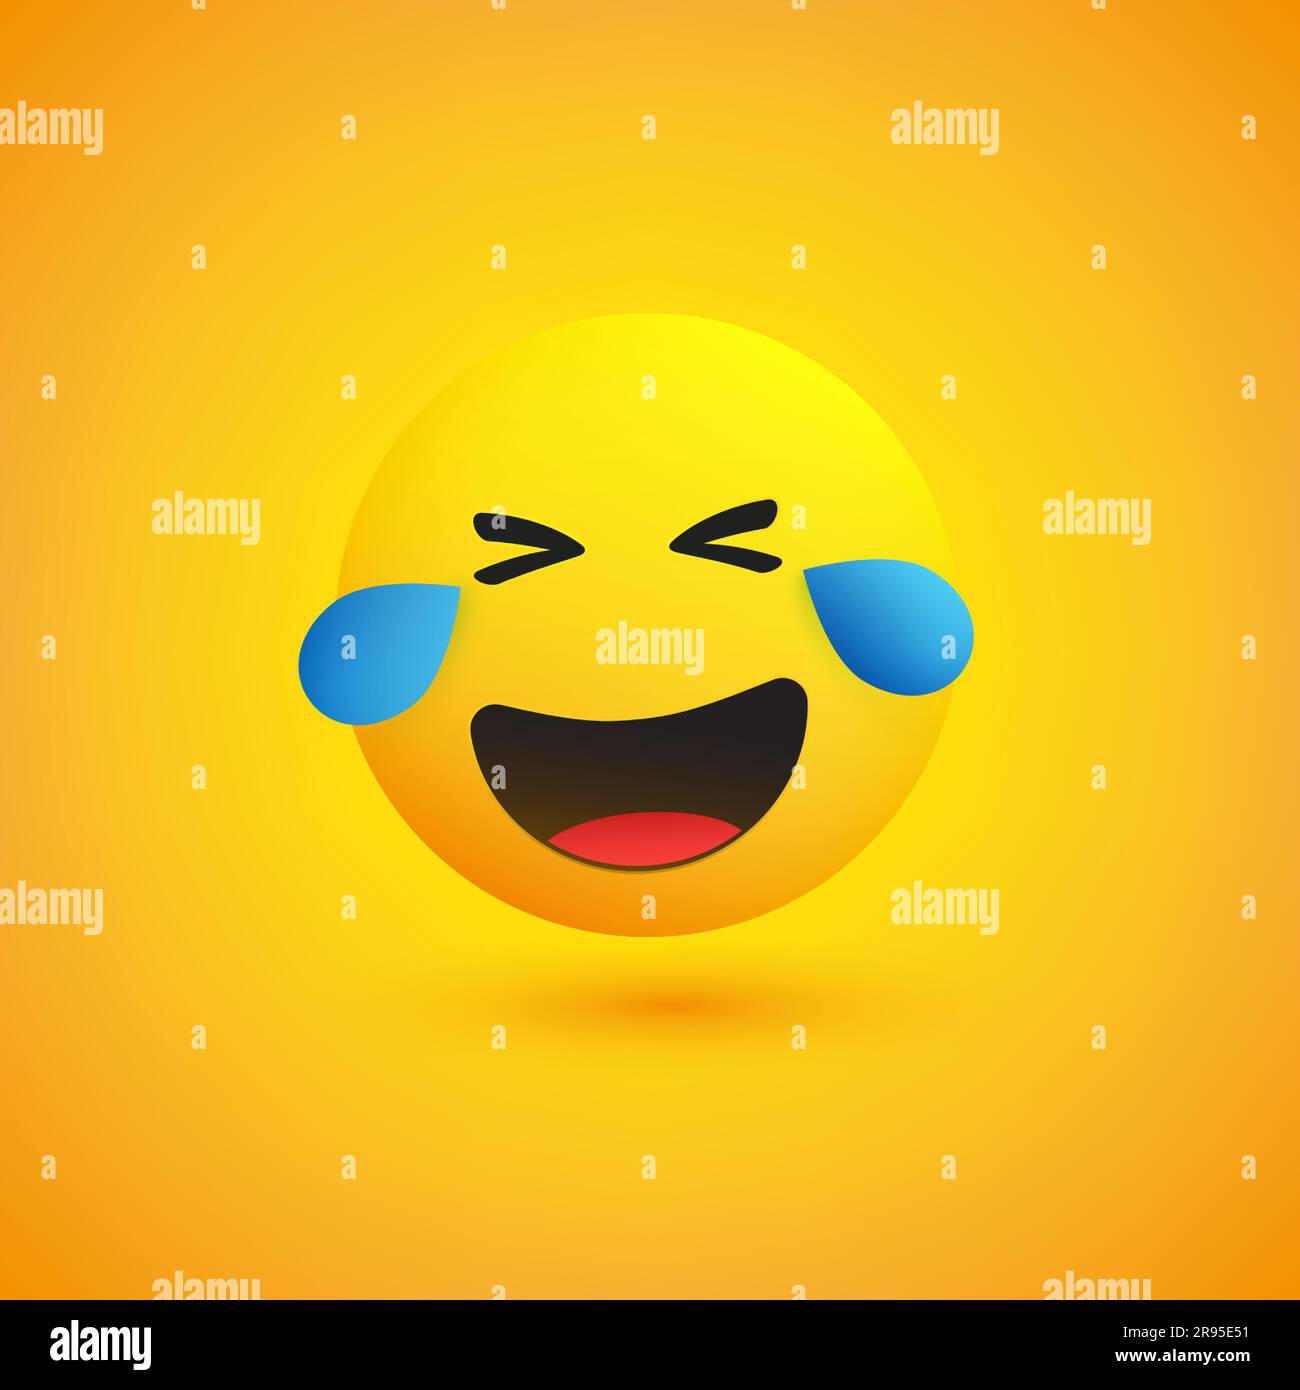 Face aux larmes de joie - Emoticon en riant sur fond jaune - Illustration vectorielle Illustration de Vecteur